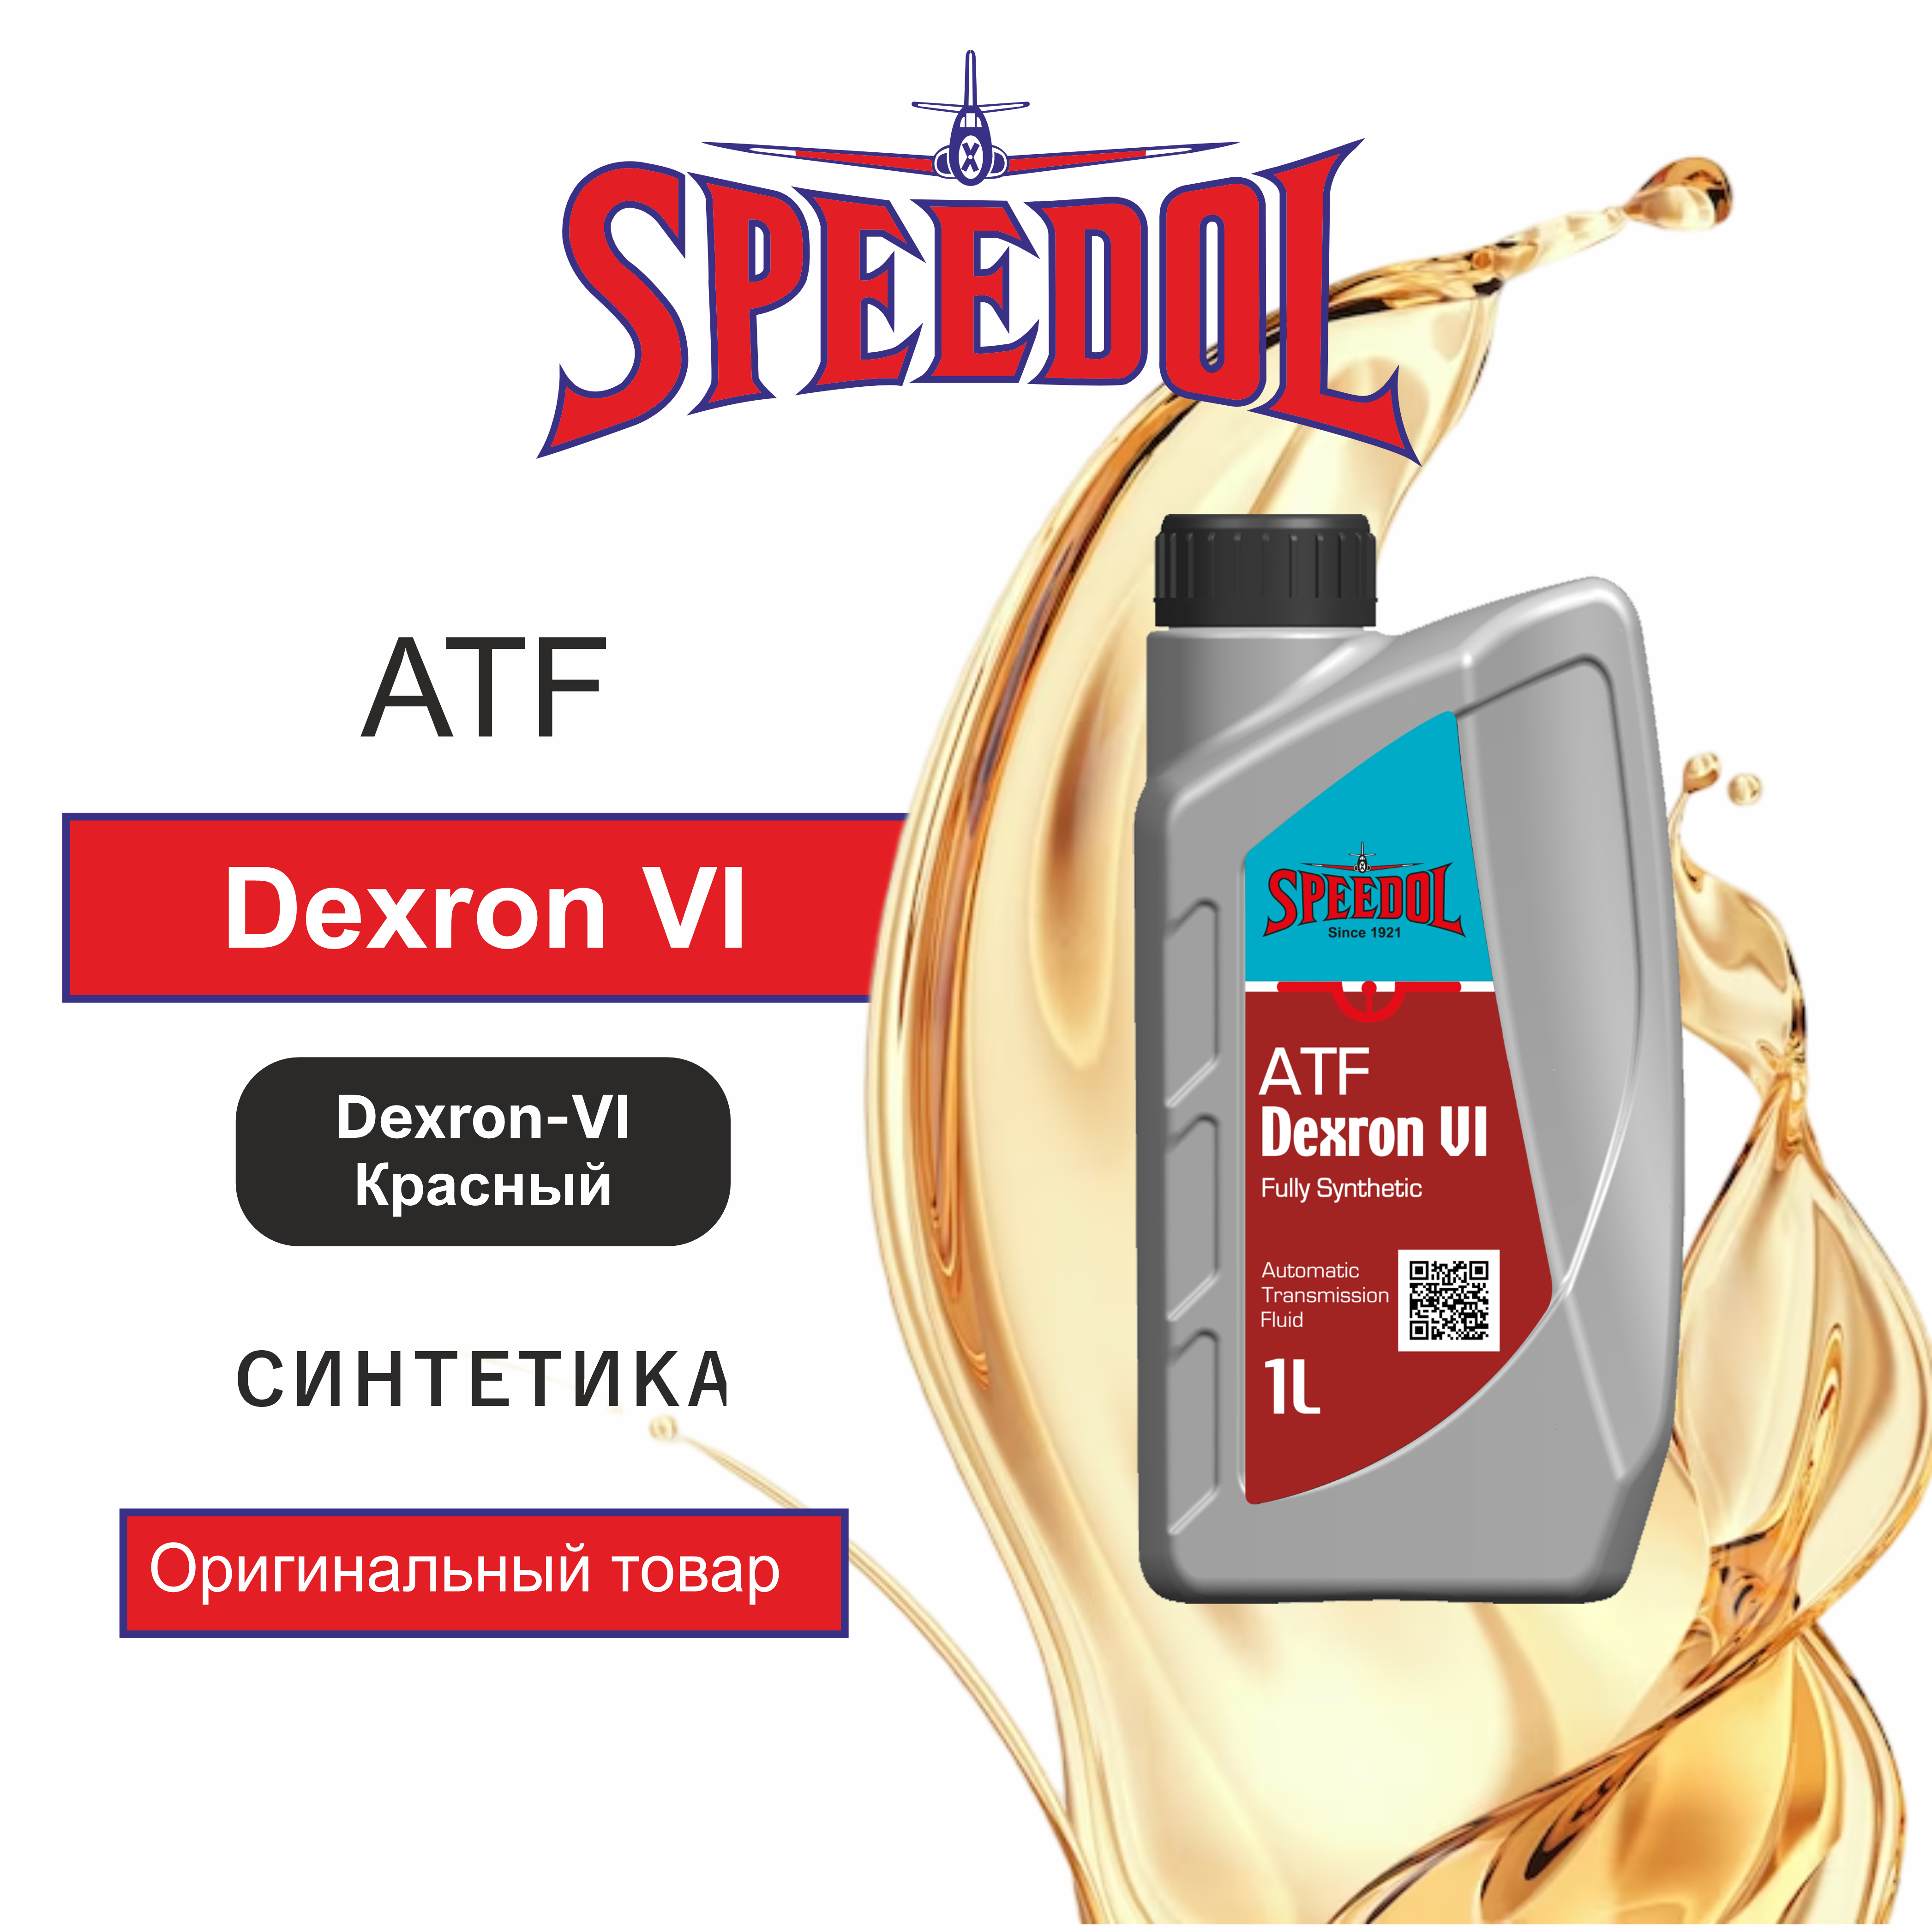 Трансмиссионное масло SPEEDOL ATF DEXRON VI (5655) 1л